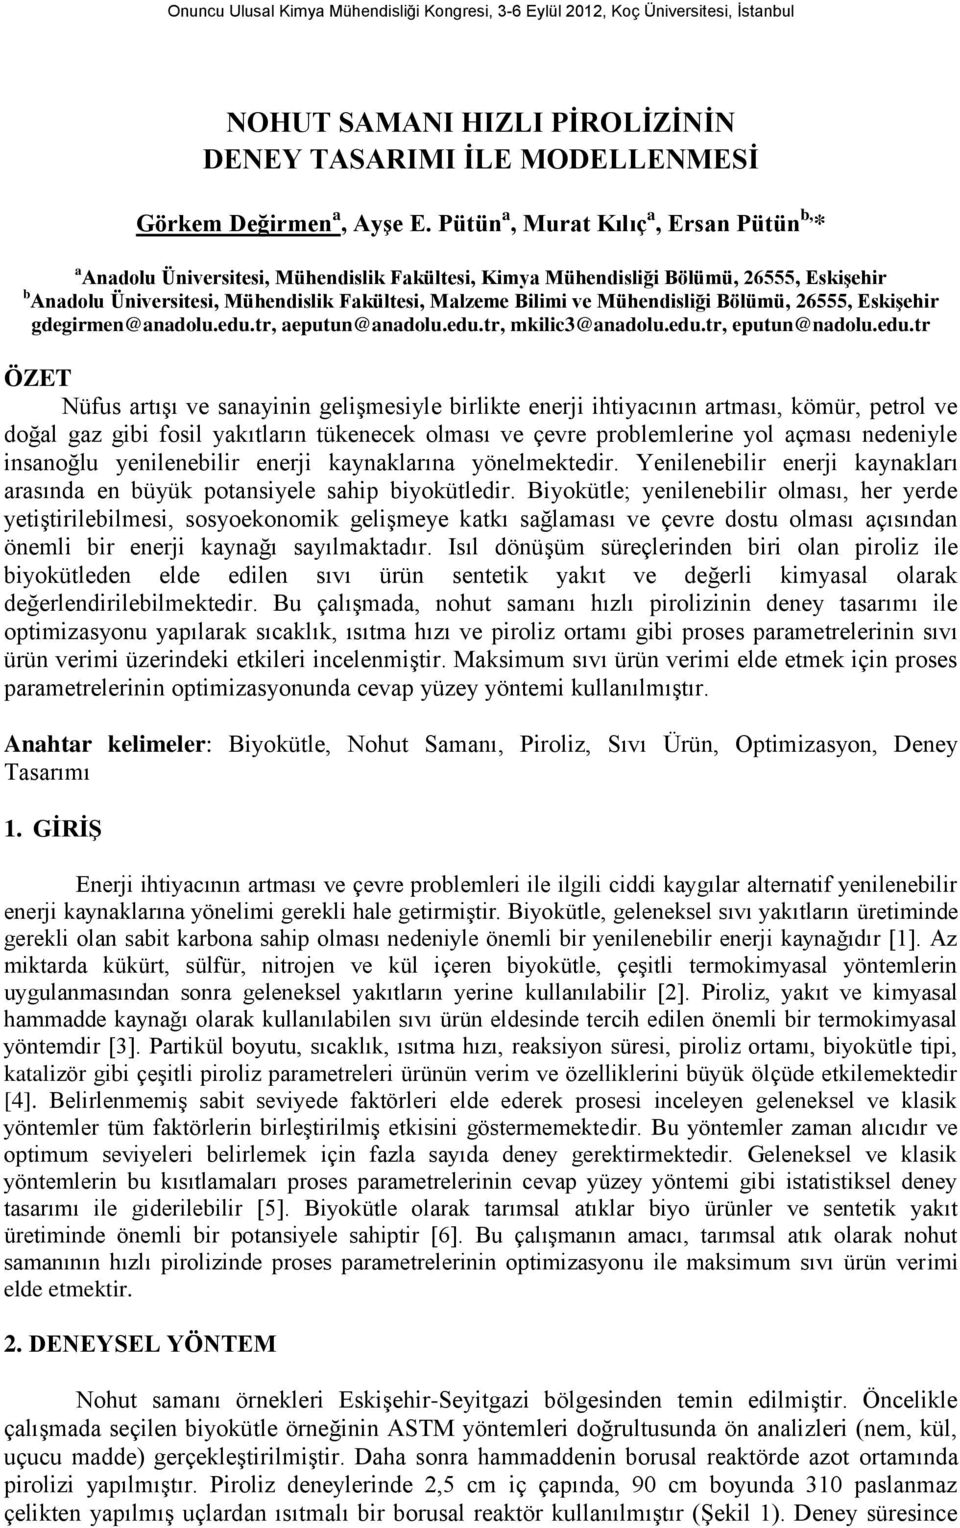 Mühendisliği Bölümü, 2555, Eskişehir gdegirmen@anadolu.edu.